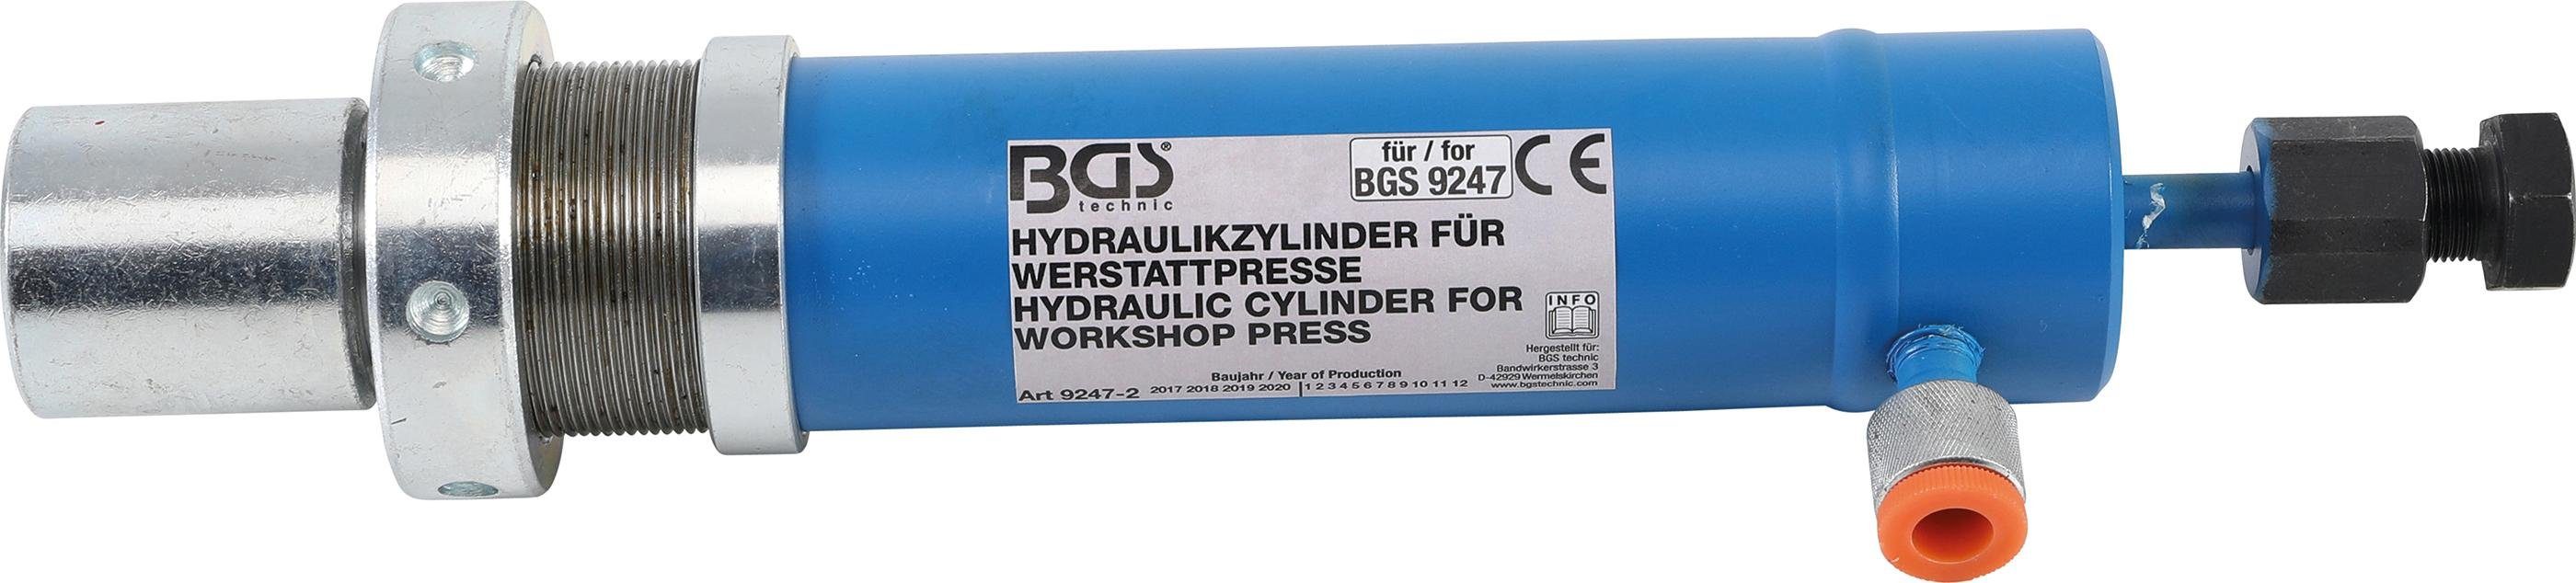 BGS technic Werkstattpresse Hydraulikzylinder für Art. 9247